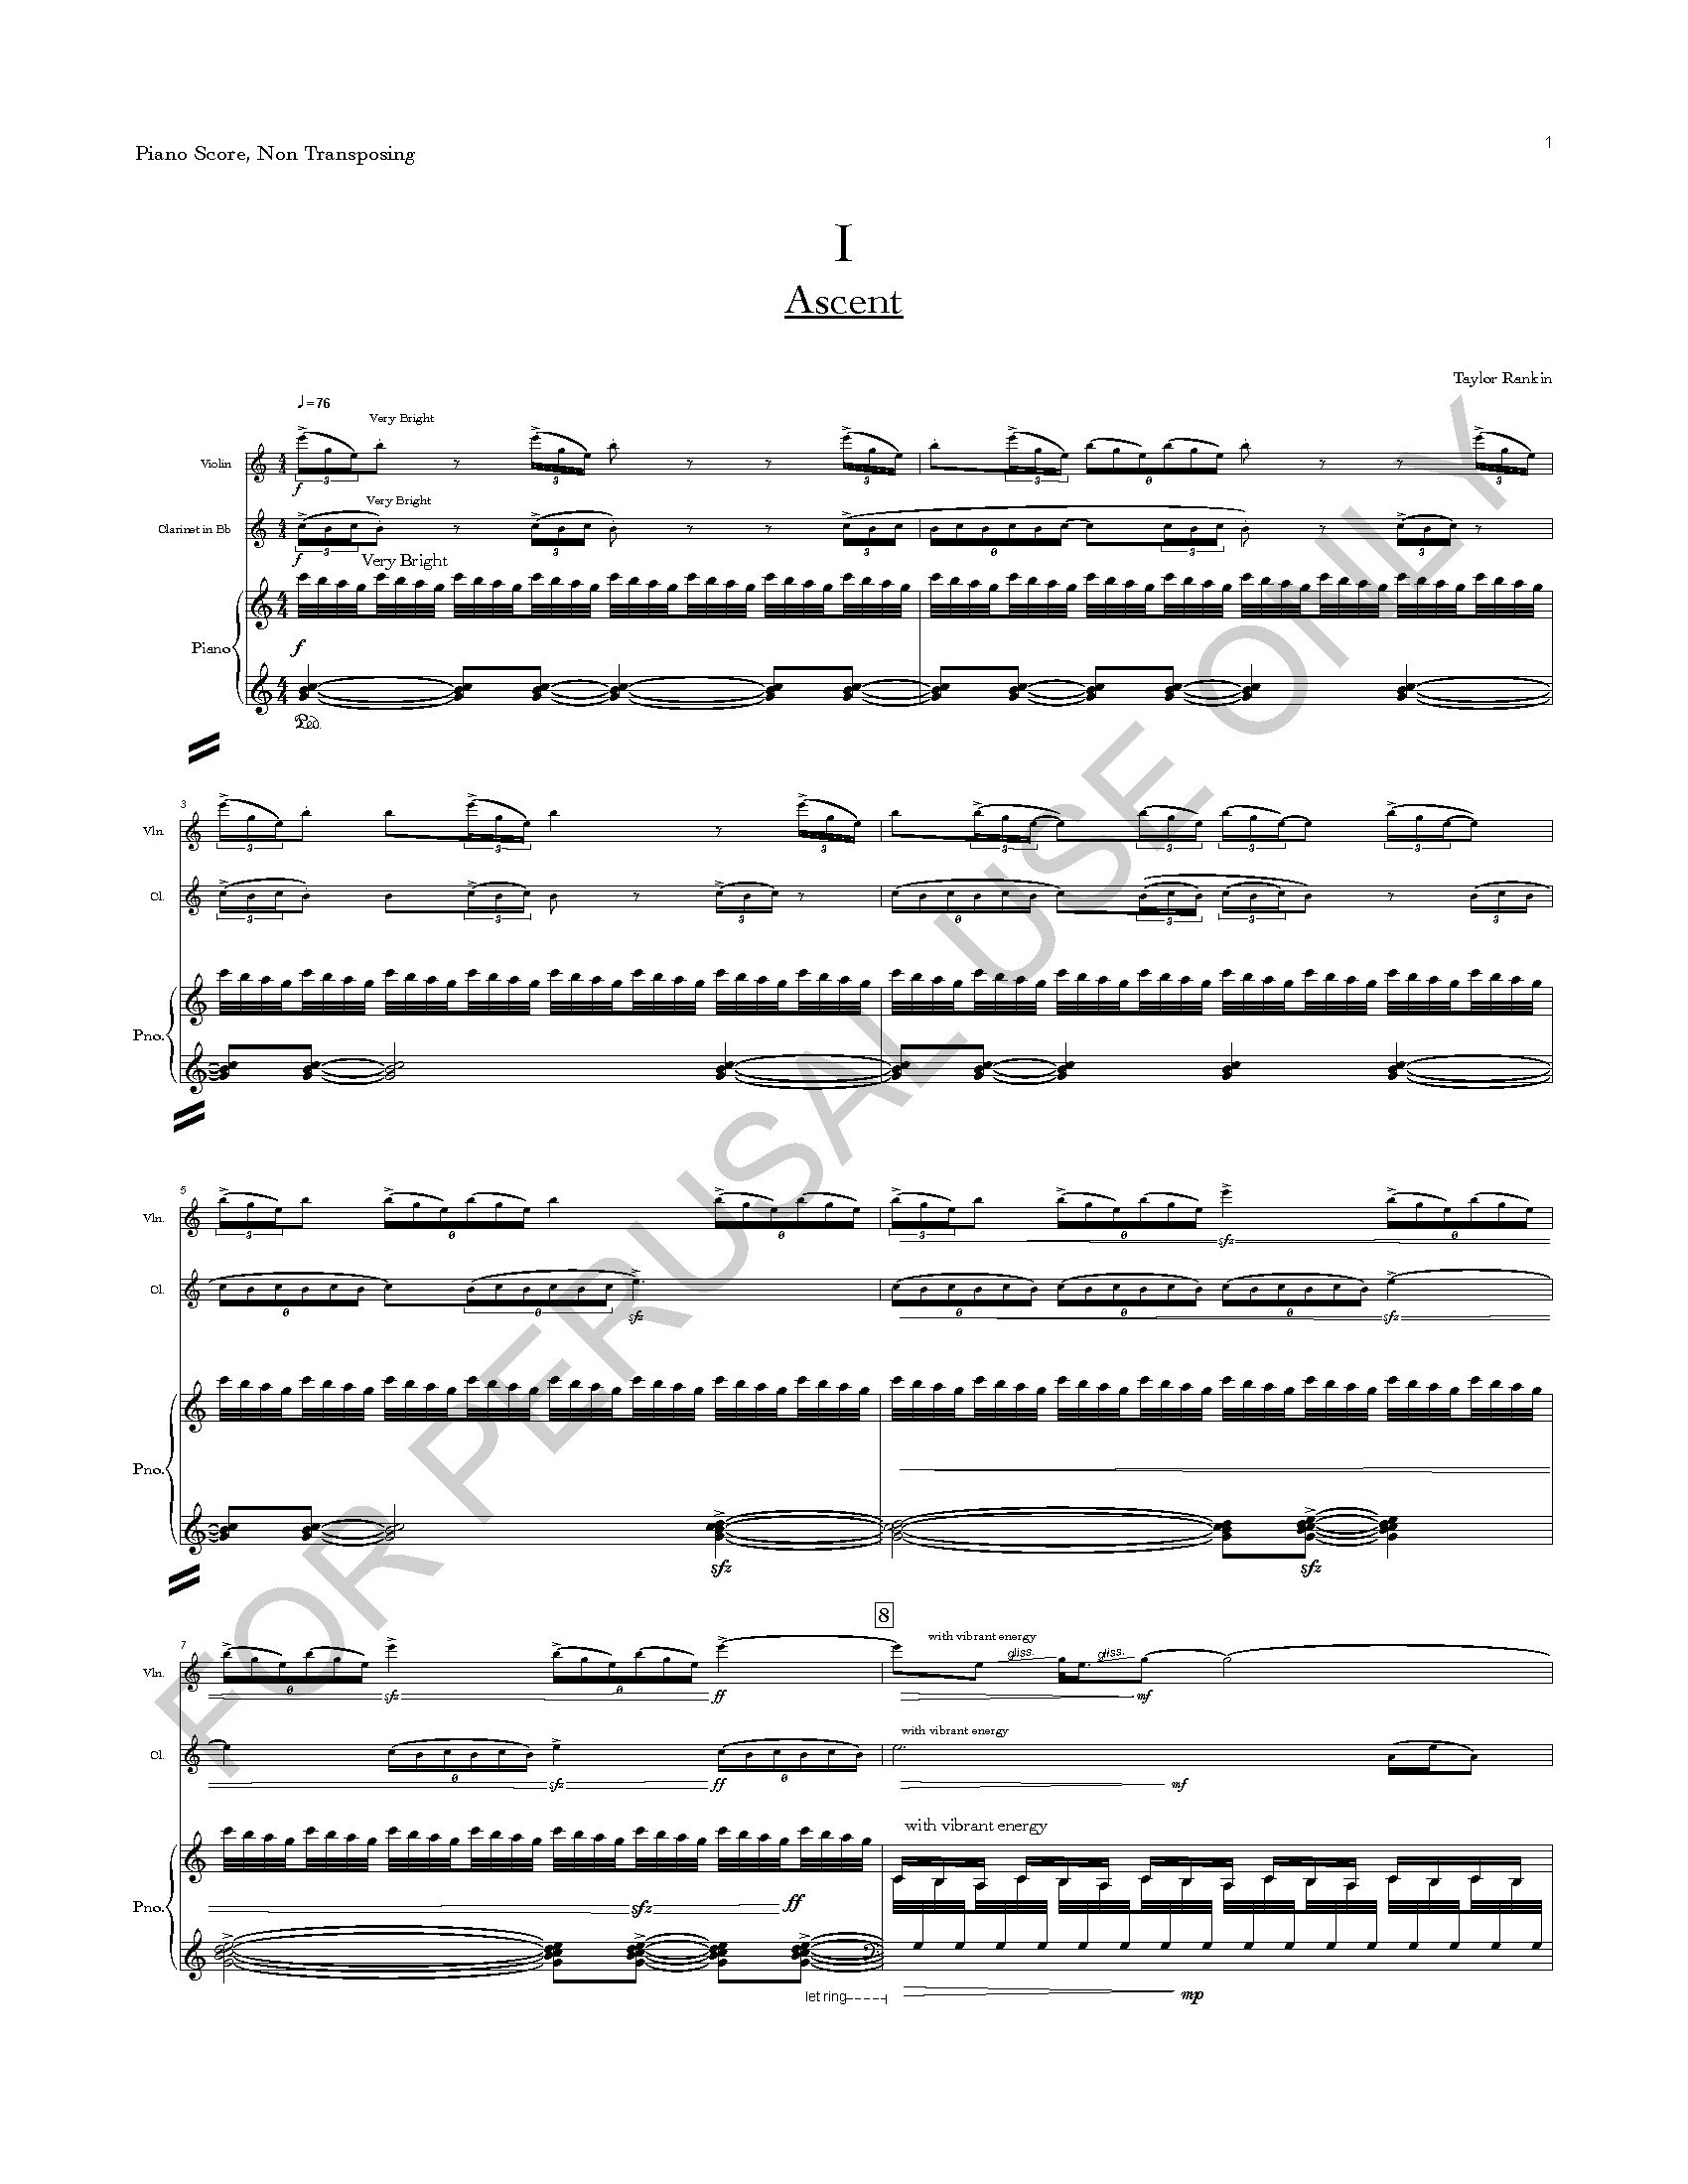 RANKIN - I. ASCENT - PIANO SCORE_Page_01.jpg